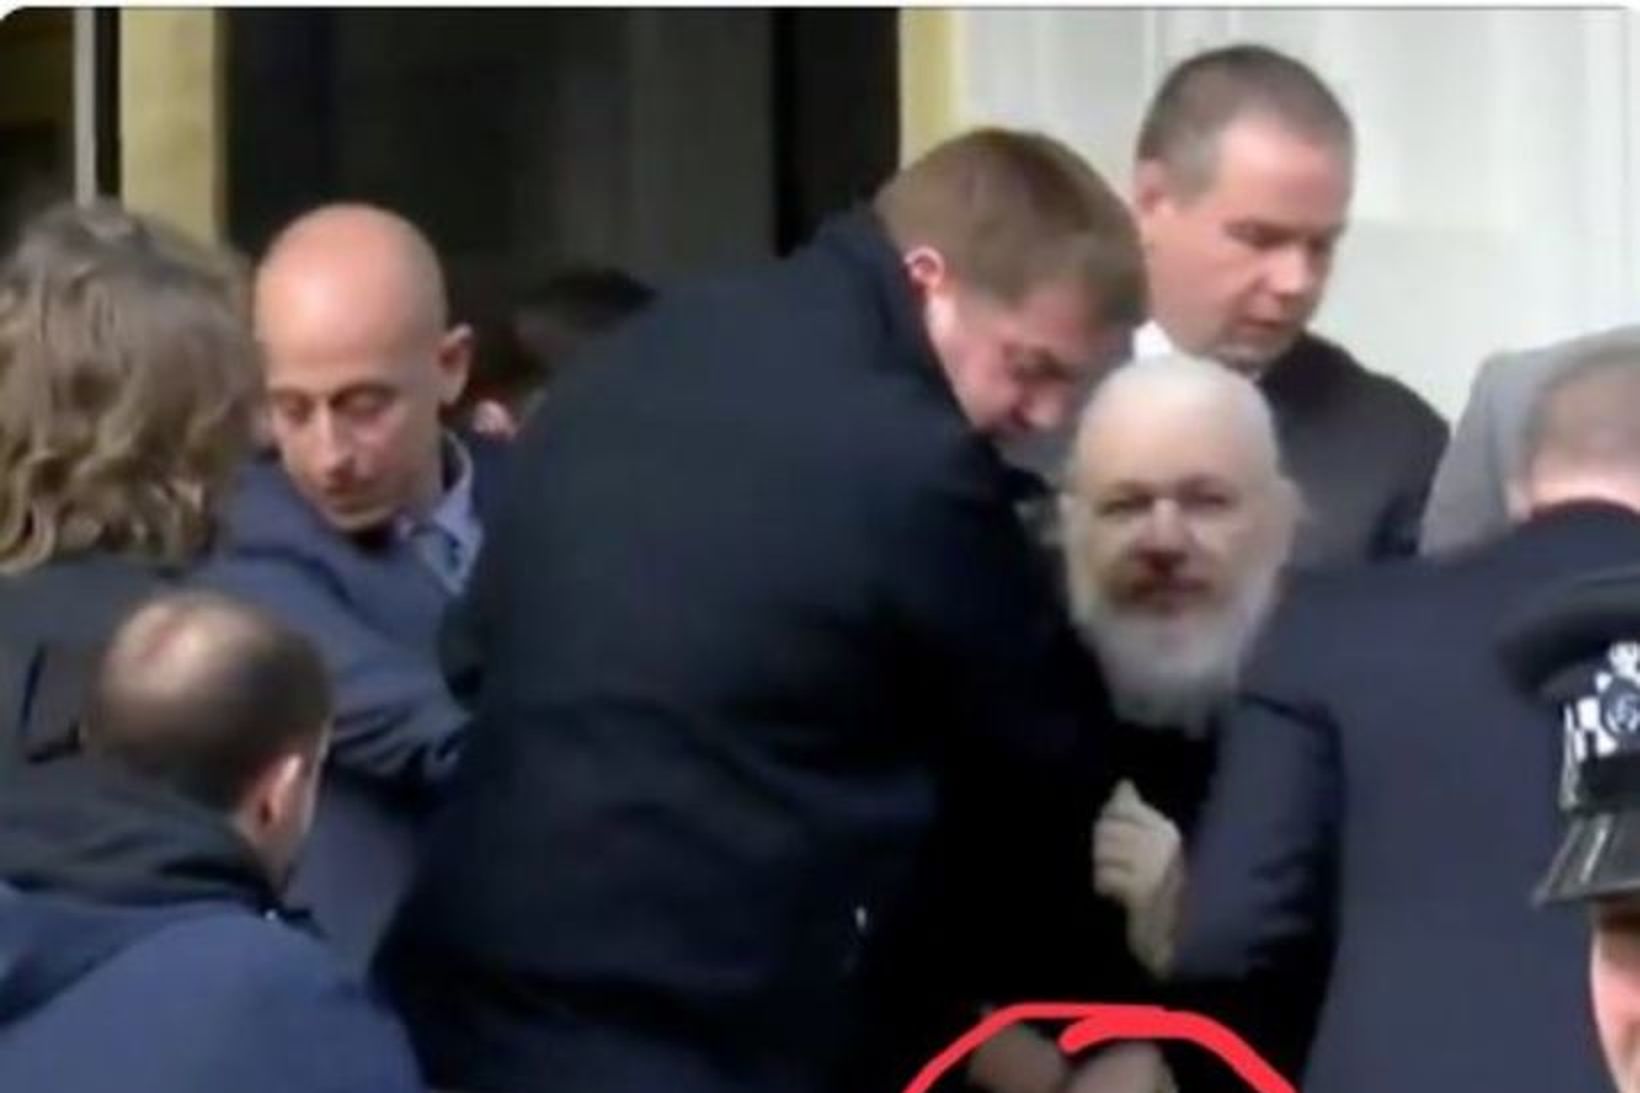 Bókin sést greinilega í höndum Assange á myndinni.